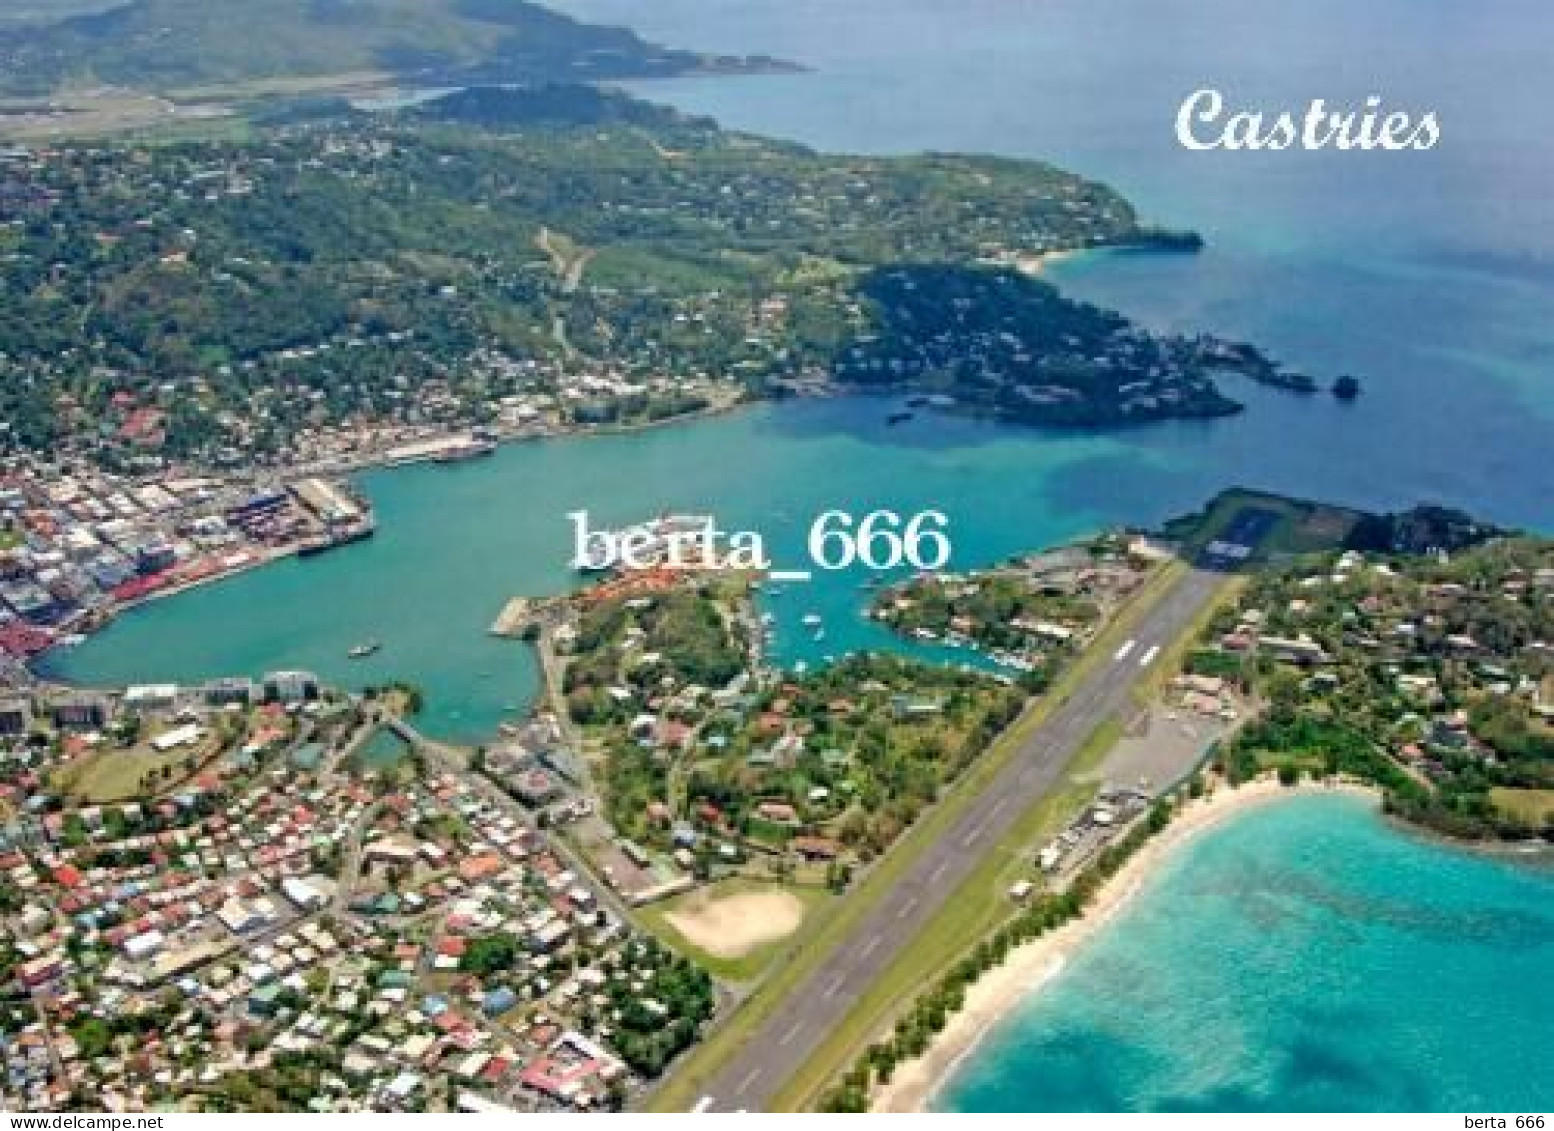 Saint Lucia Island Castries Aerial View Runway New Postcard - Saint Lucia